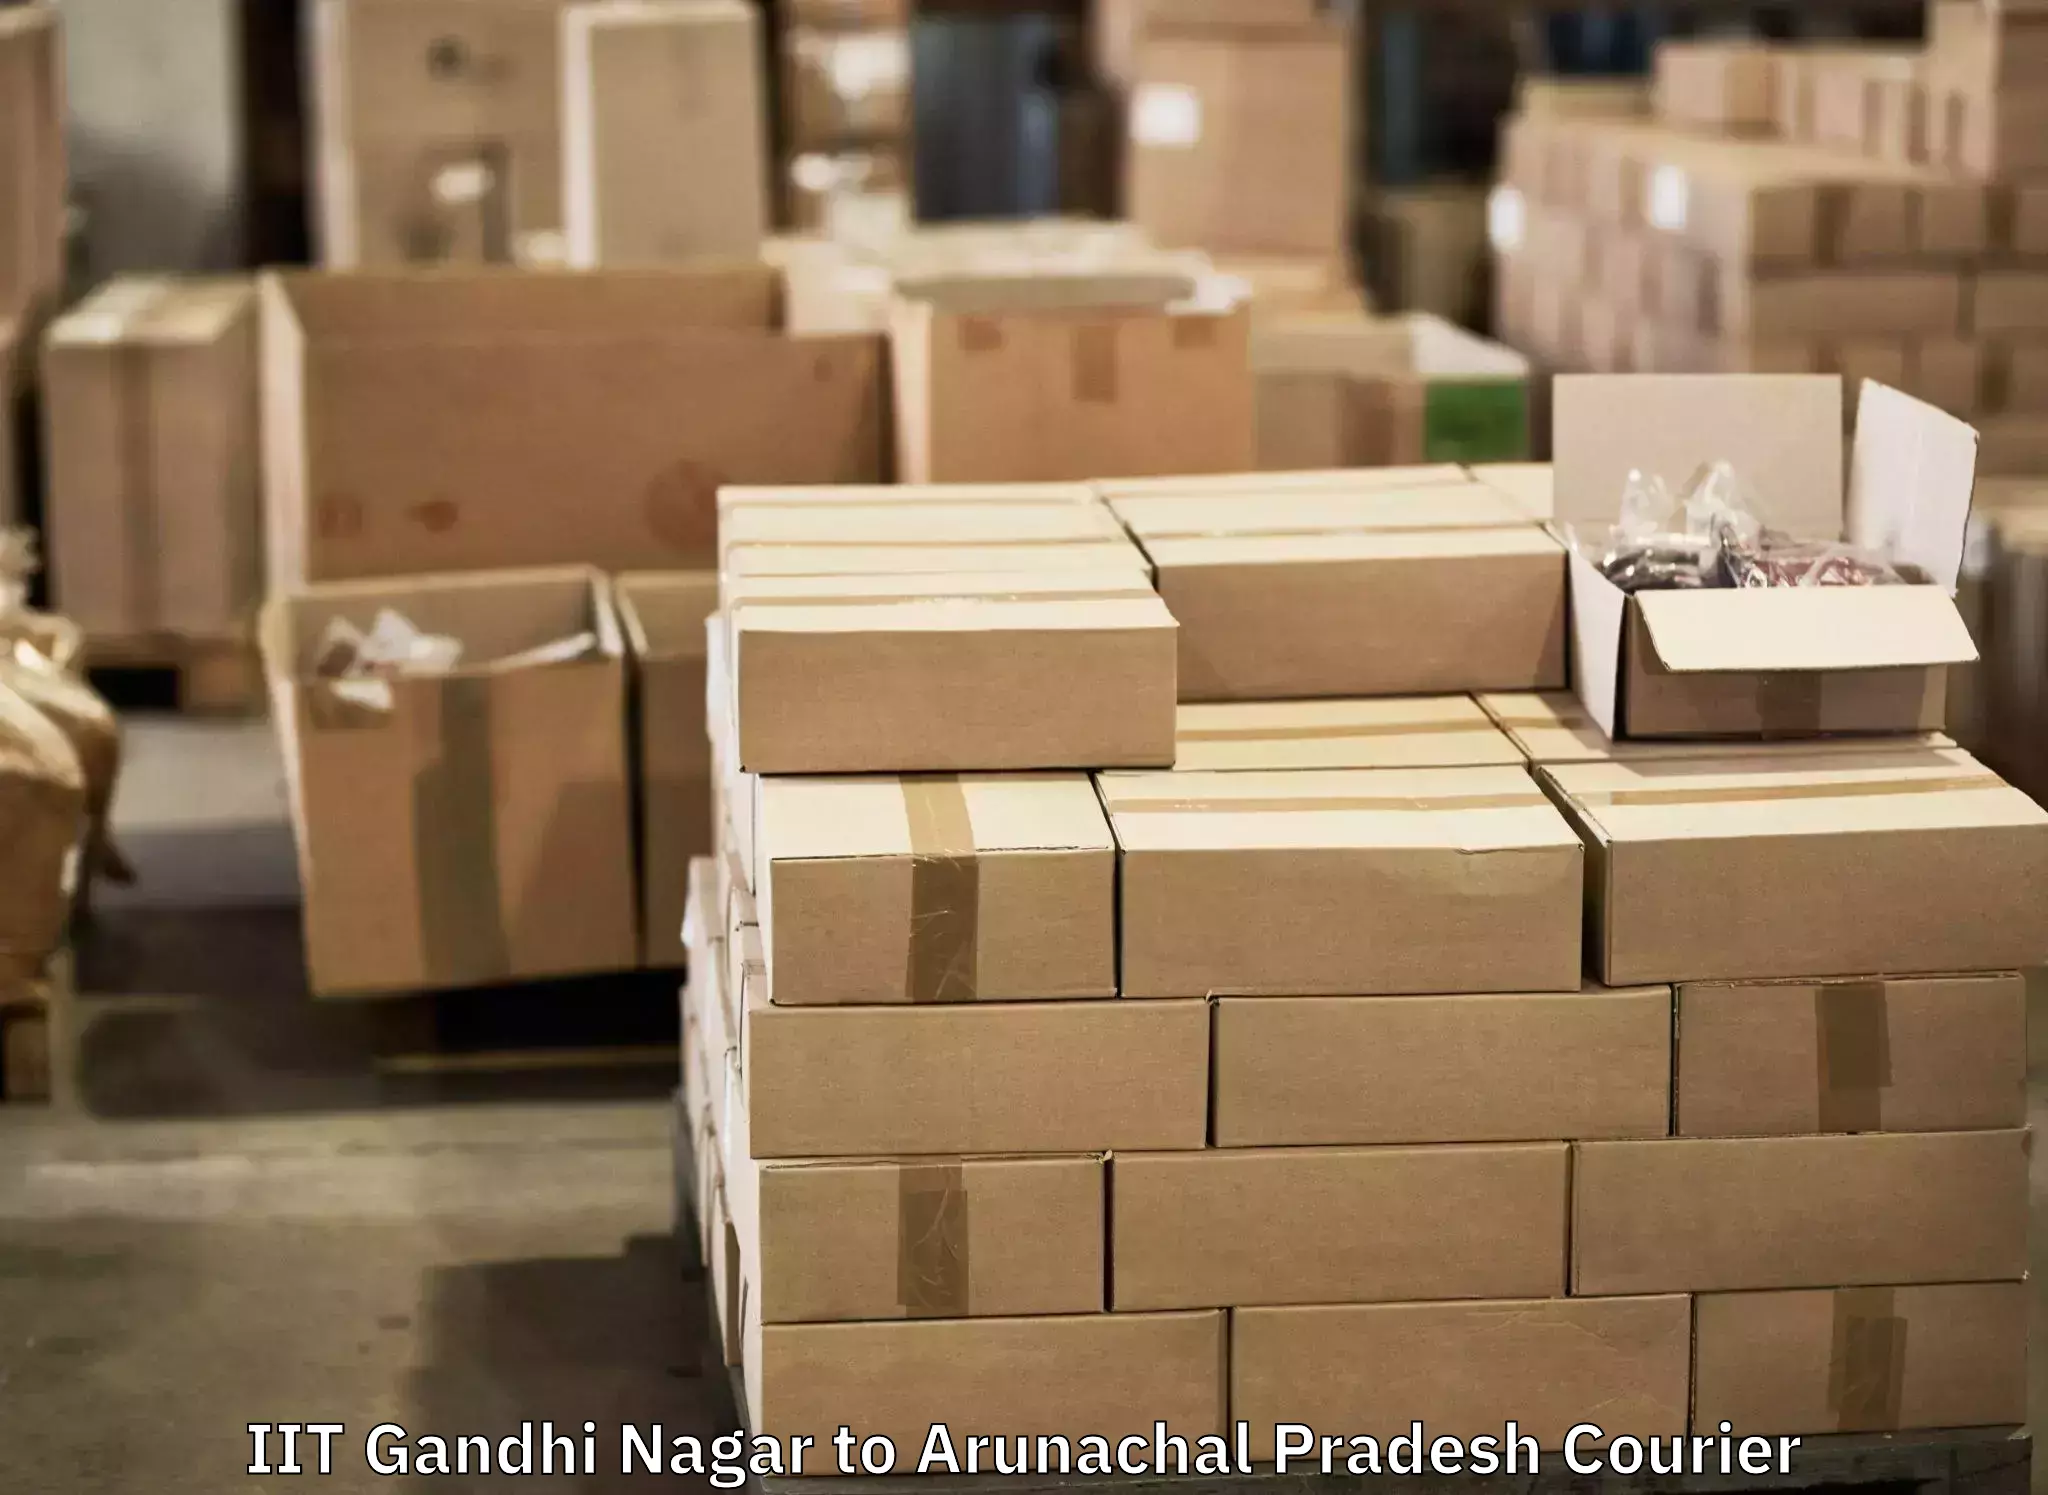 Automated luggage transport IIT Gandhi Nagar to Namsai